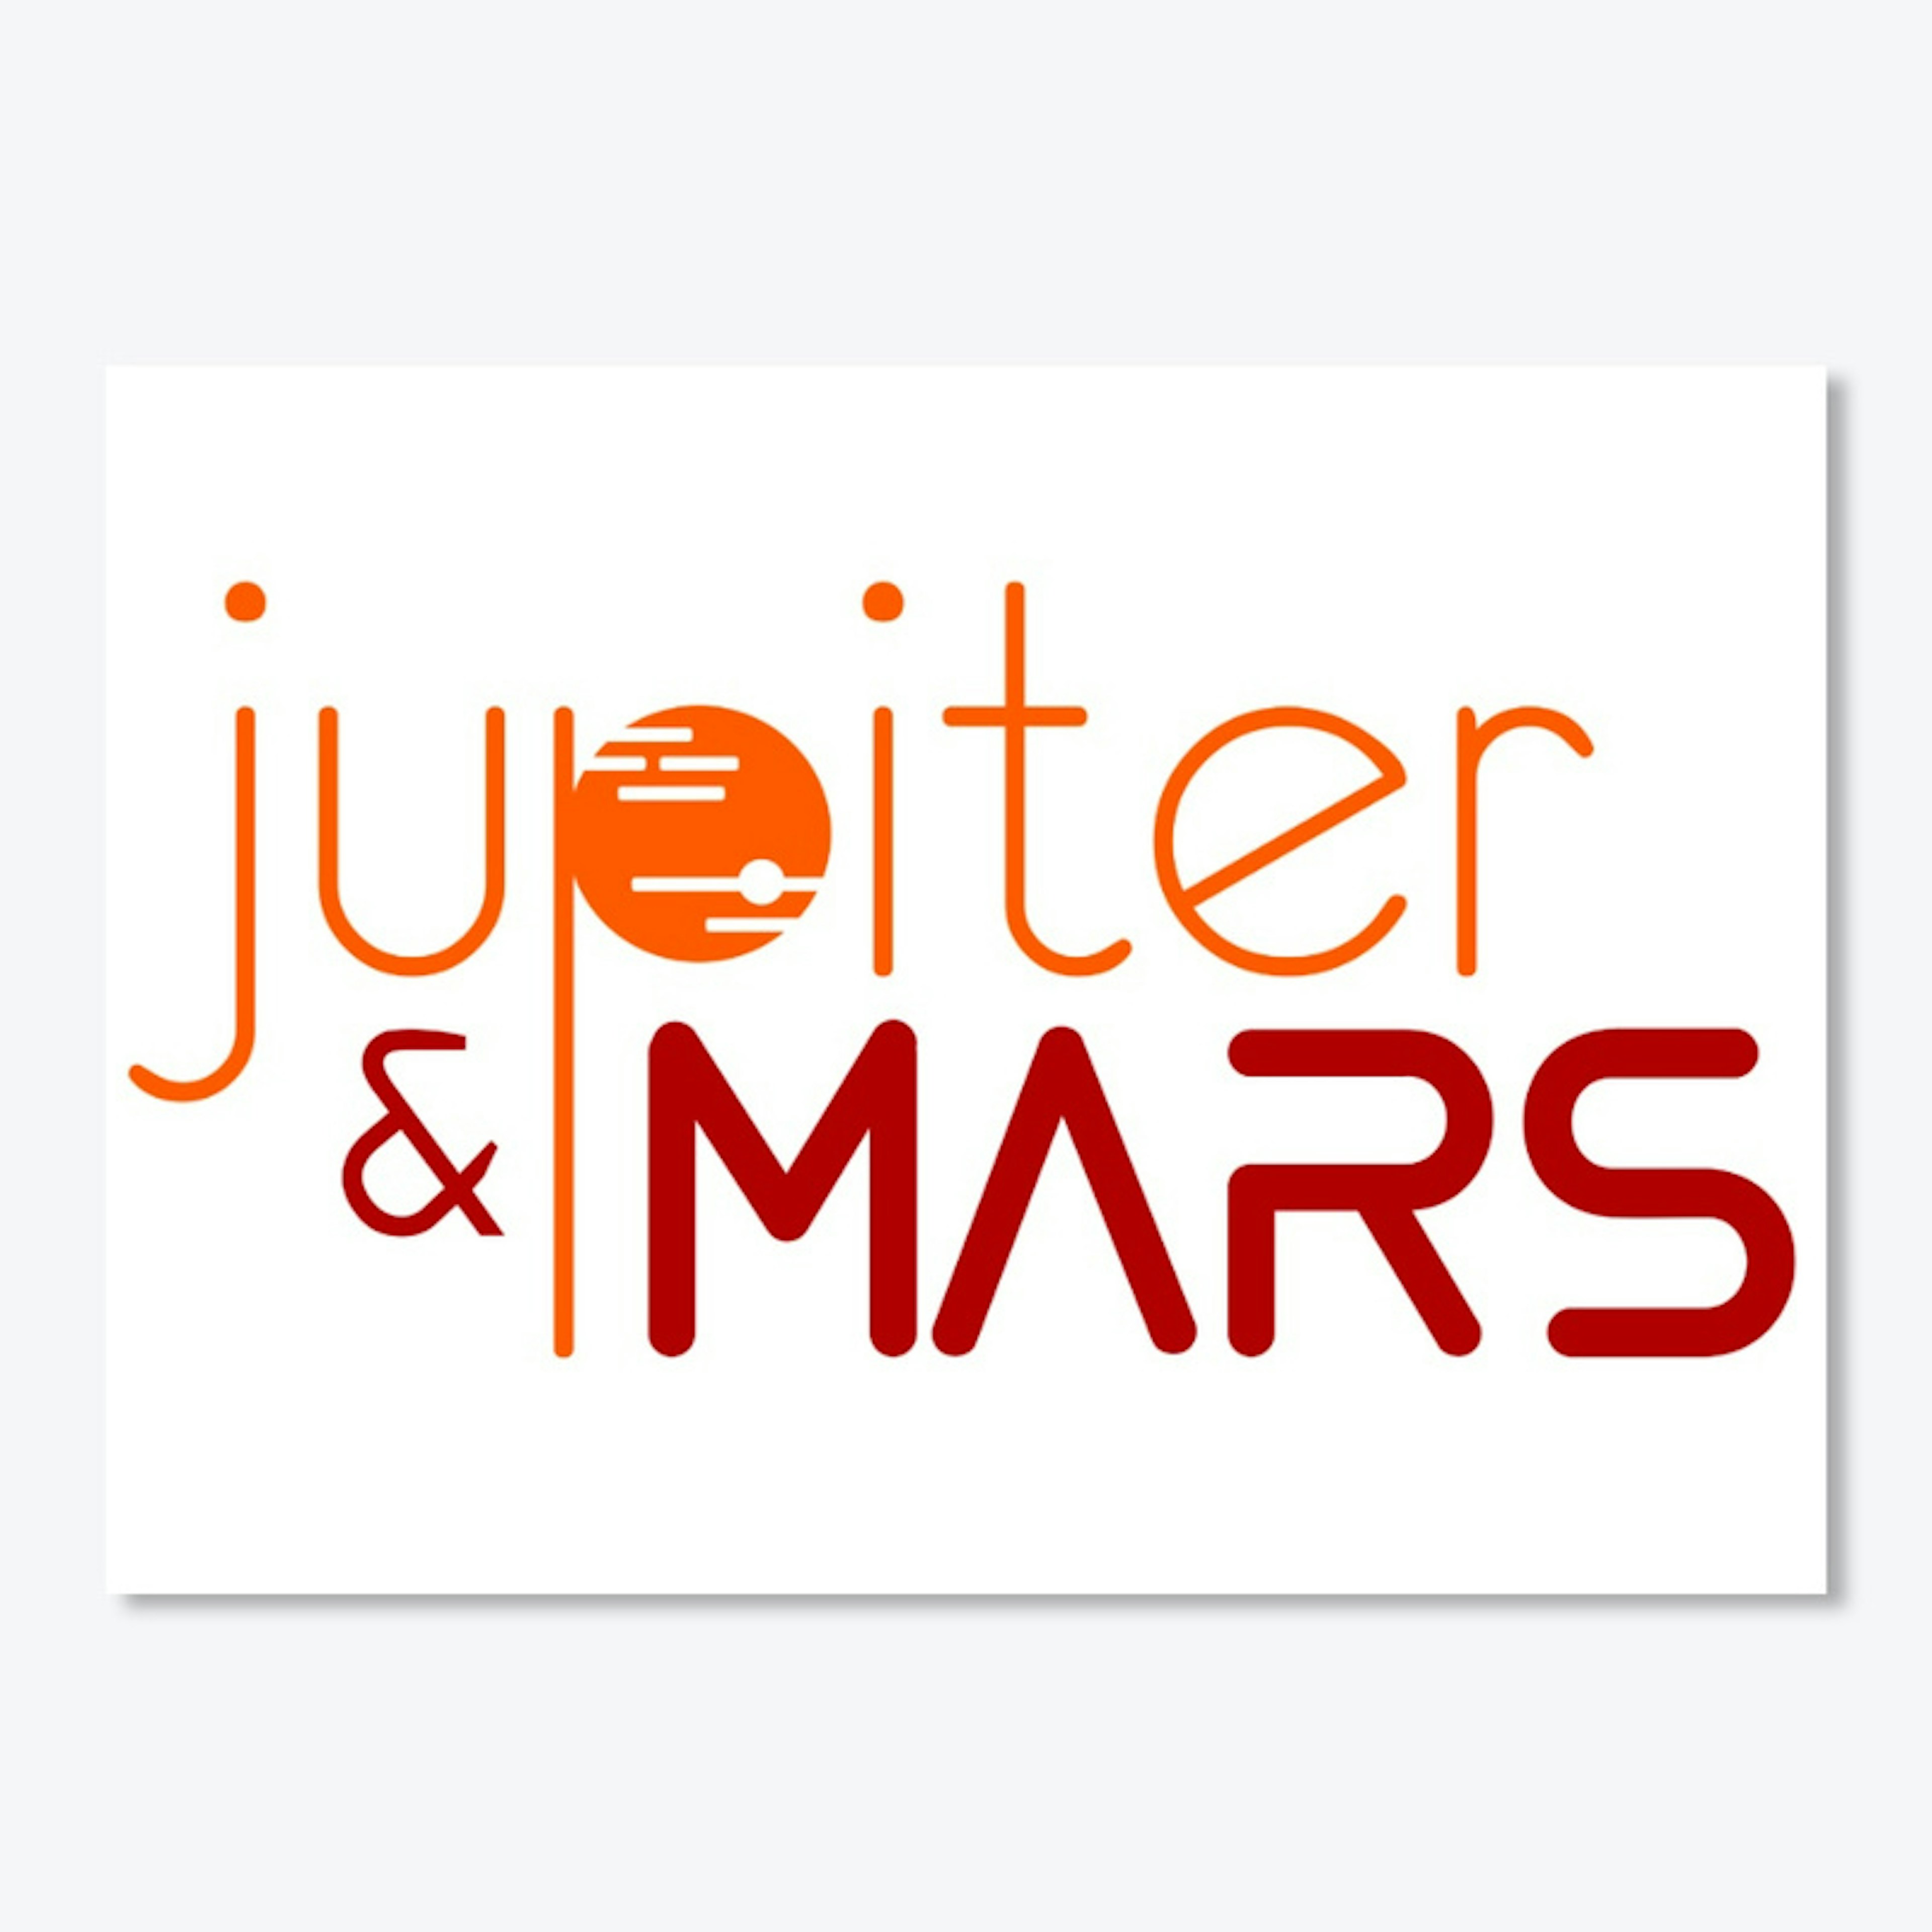 Jupiter & Mars Stickers